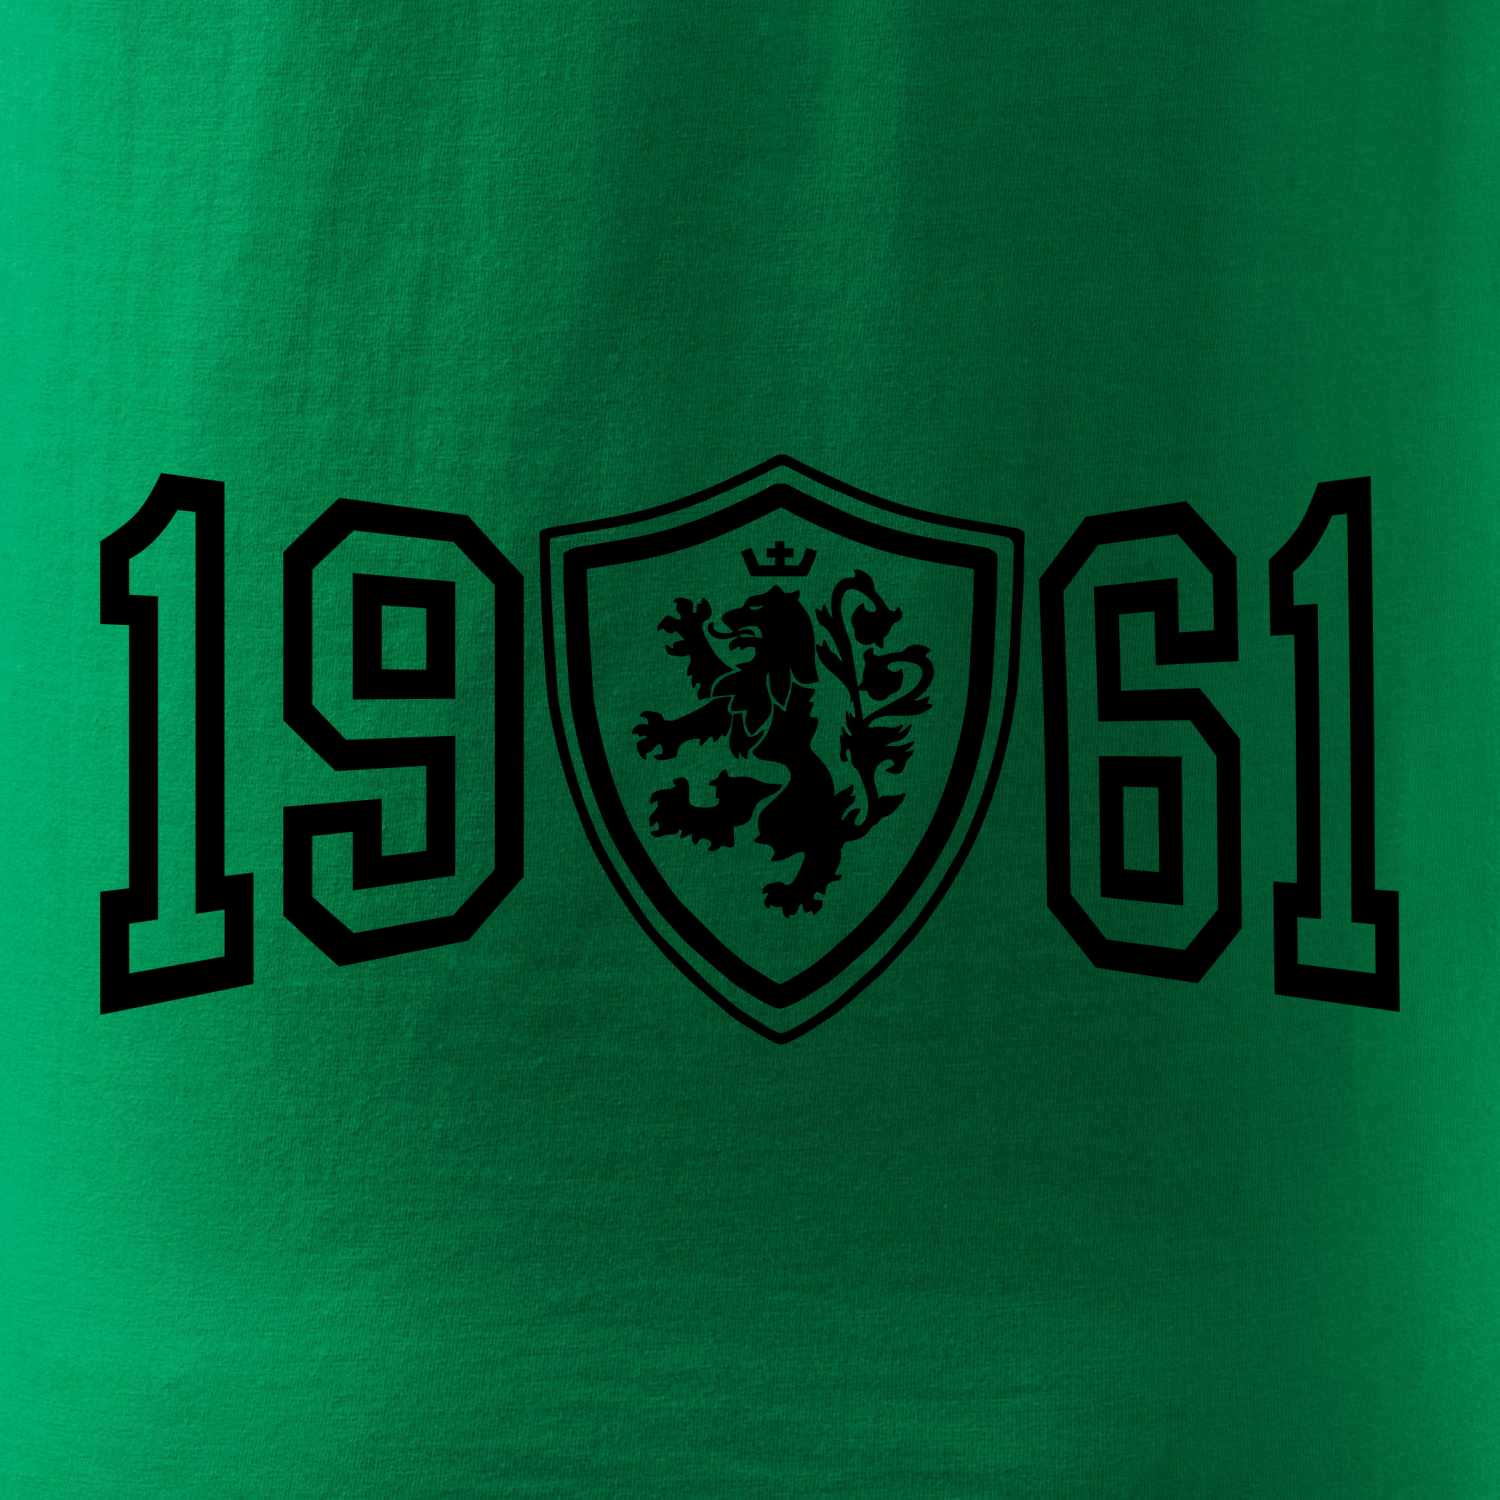 Narozeninový motiv - znak - 1961 - Pánské triko Fantasy sportovní (dresovina)